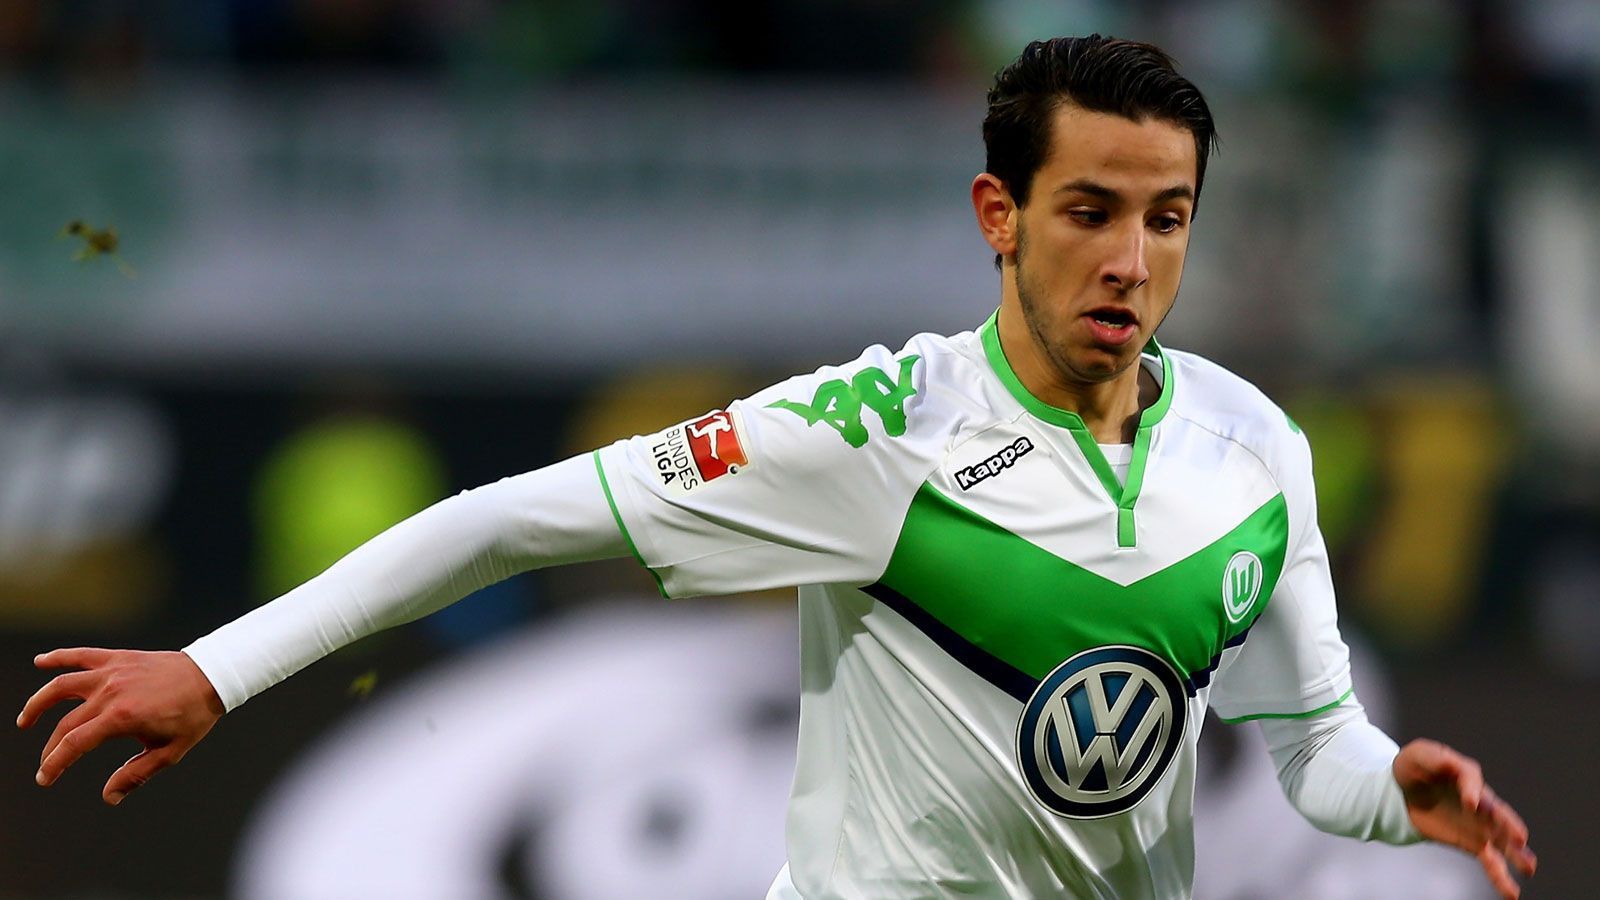 
                <strong>Ismail Azzaoui (VfL Wolfsburg)</strong><br>
                KnieverletzungVerletzt seit 6. Juli 2018Prognose: Der Wolfsburger fällt längerfristig aus.
              